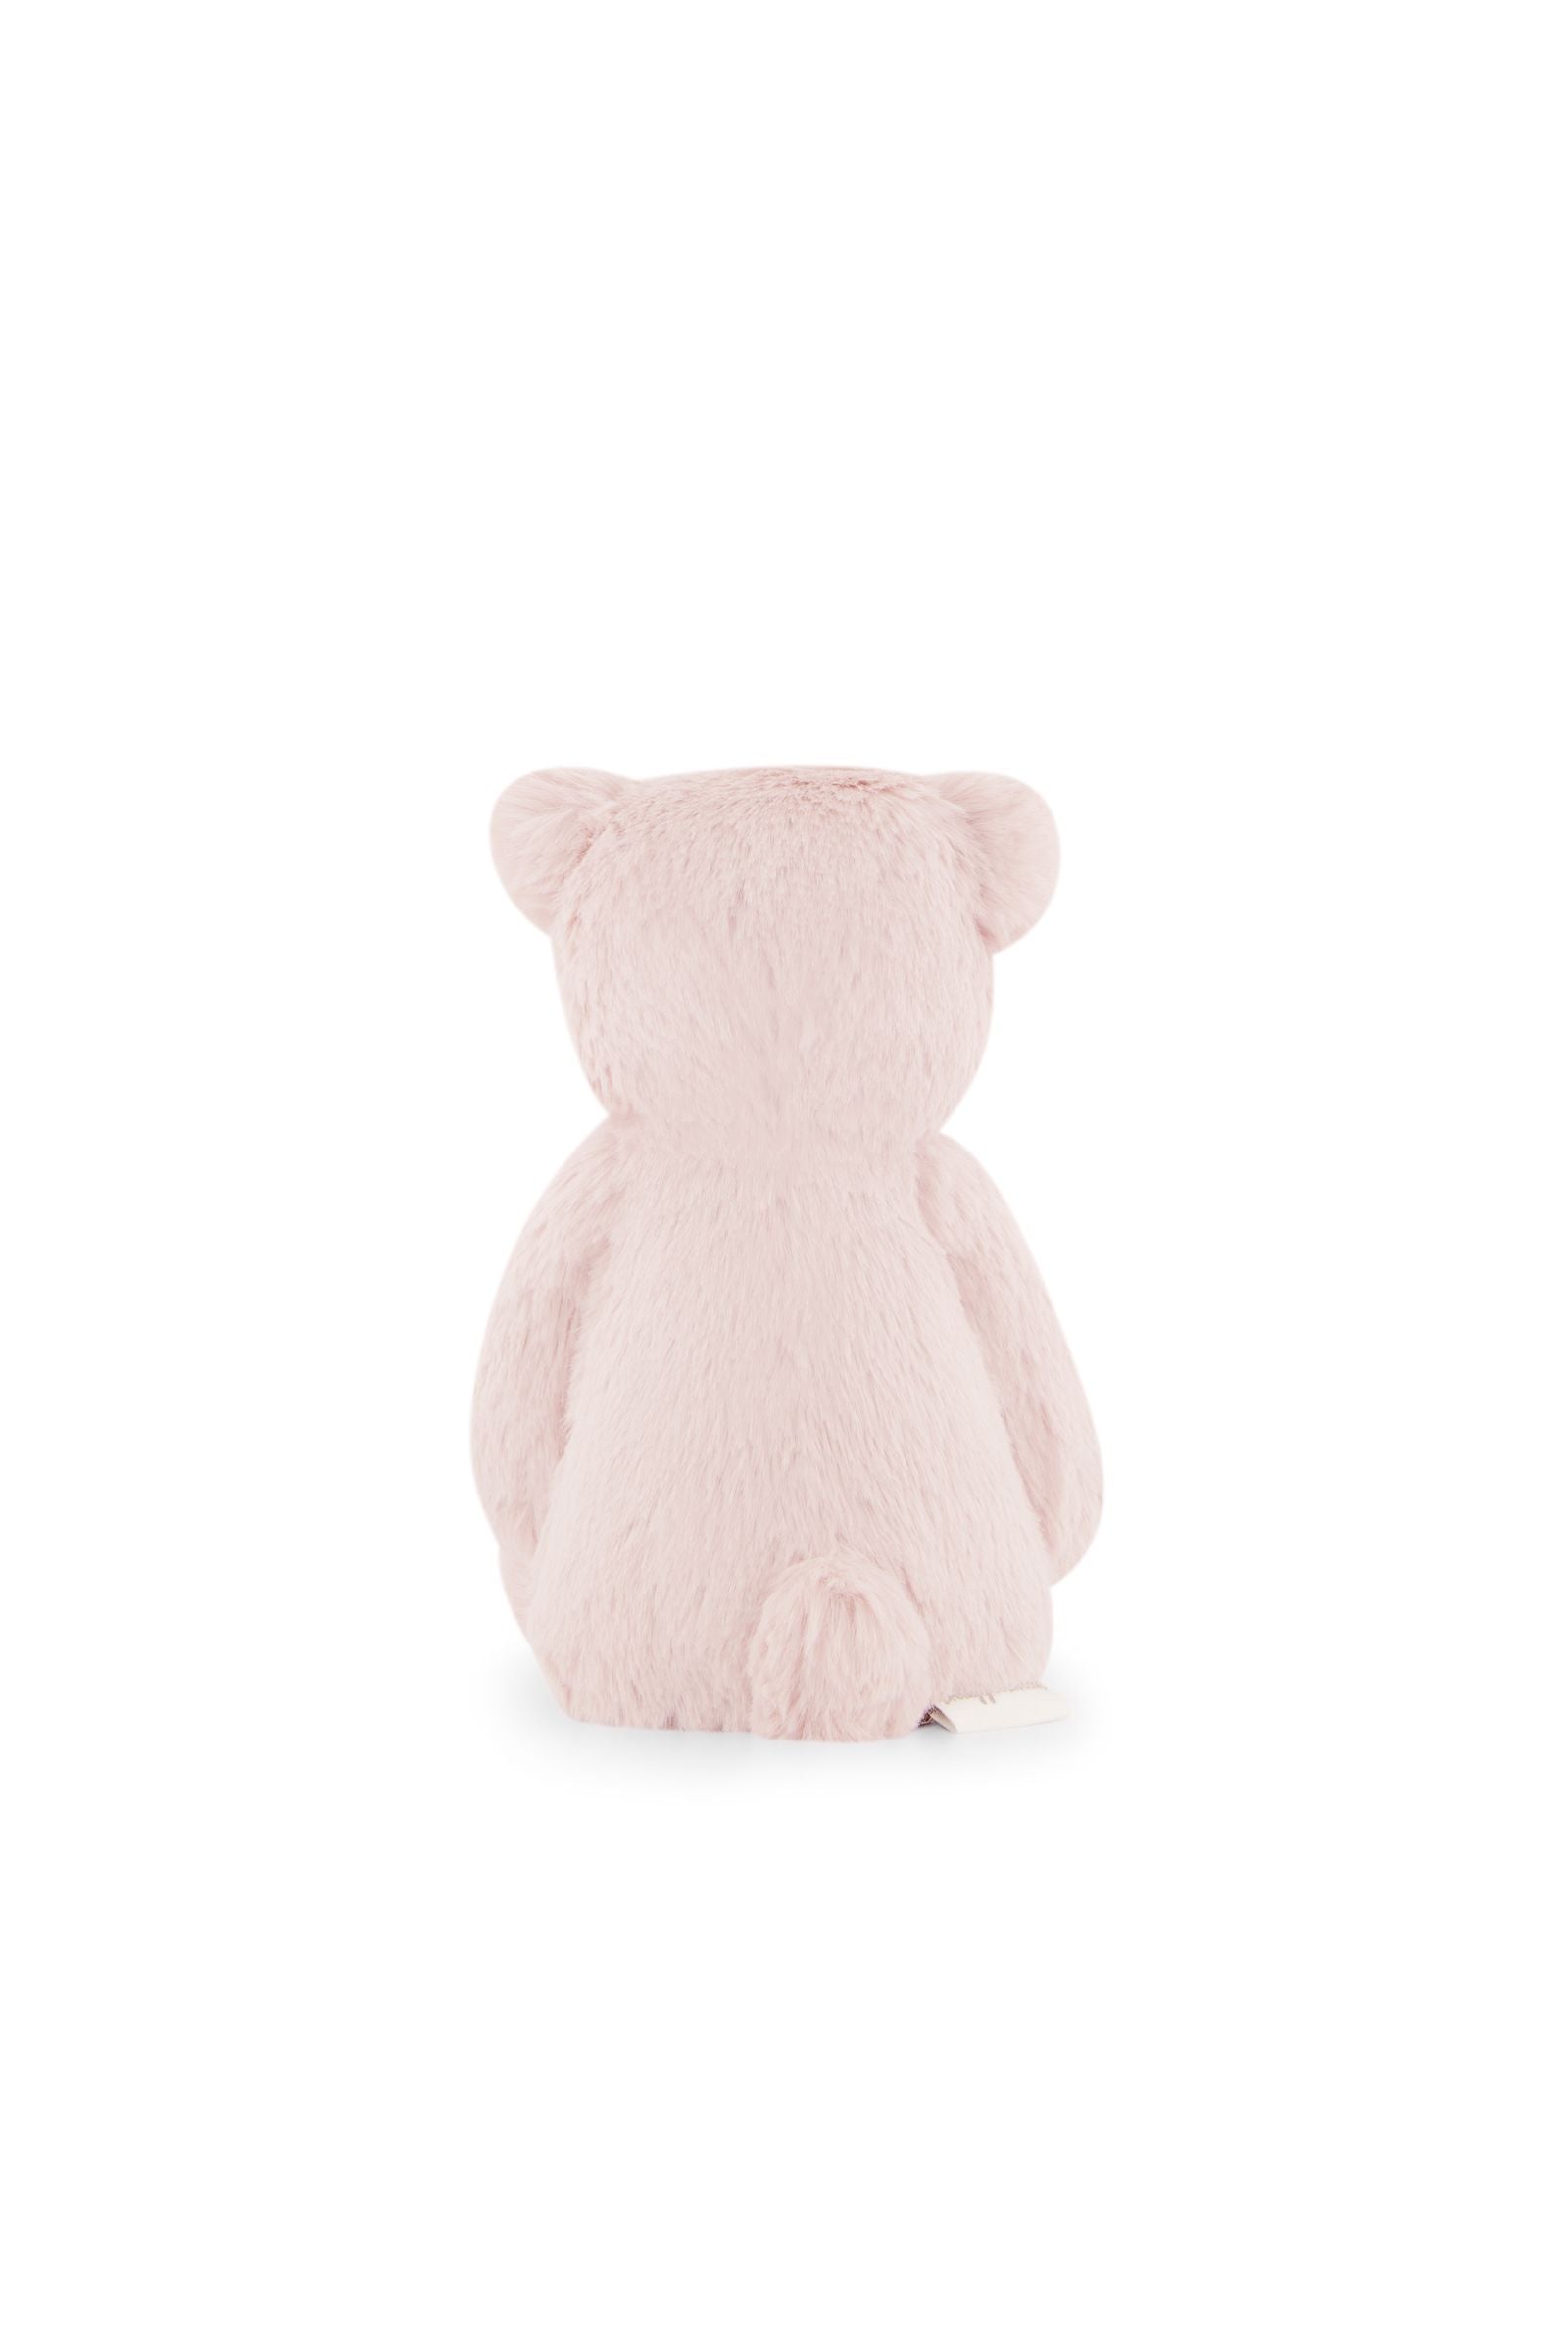 Snuggle Bunnies - George the Bear - Blush 20cm-Toys-Jamie Kay-The Bay Room